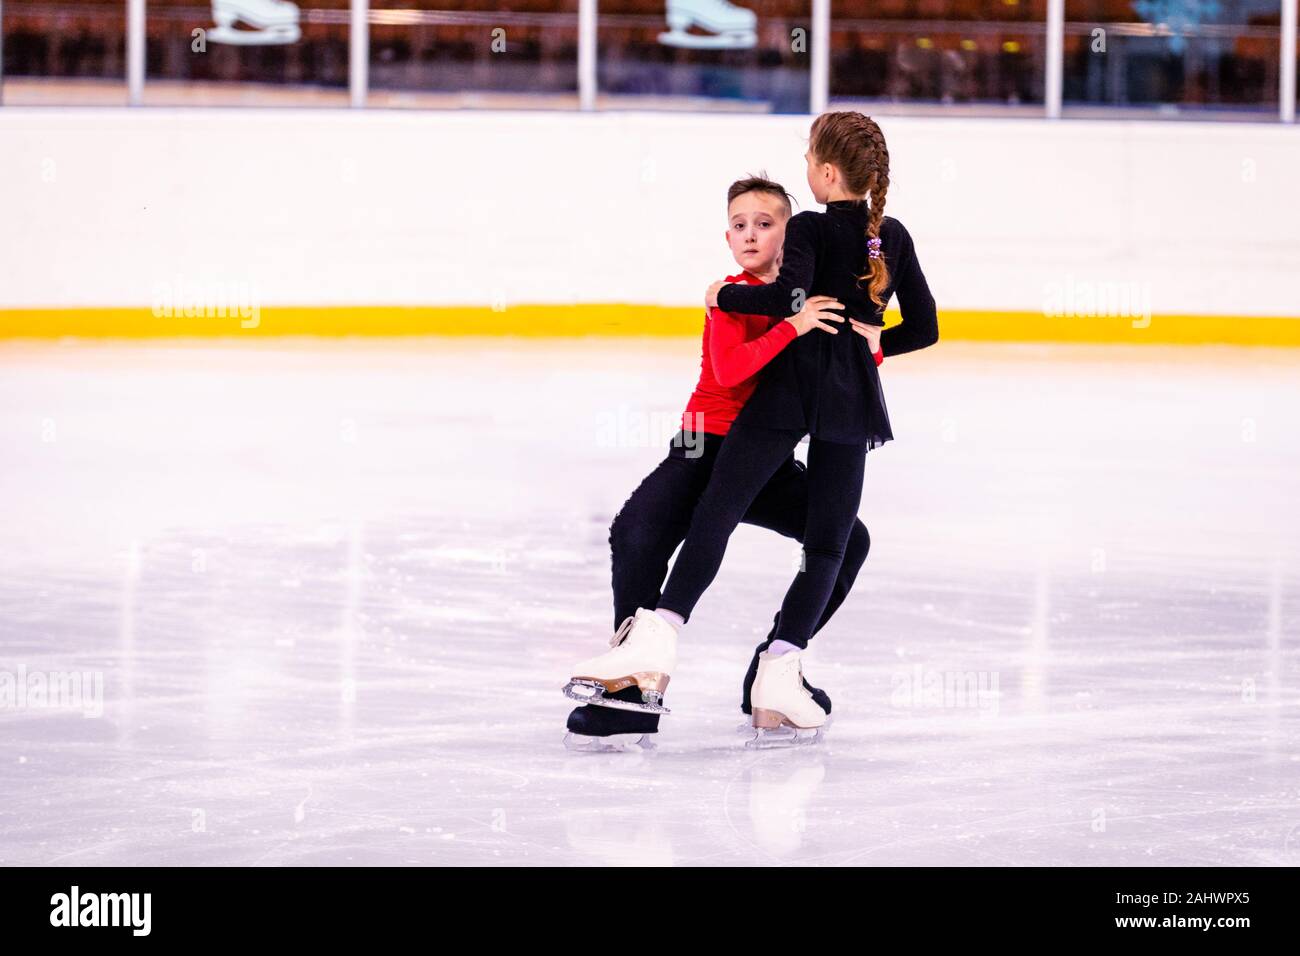 Formación de patinaje sobre hielo. Los niños atletas aprender par de  patinaje en el hielo. el niño realiza el apoyo de la chica, él está muy  centrado y diligente Fotografía de stock -